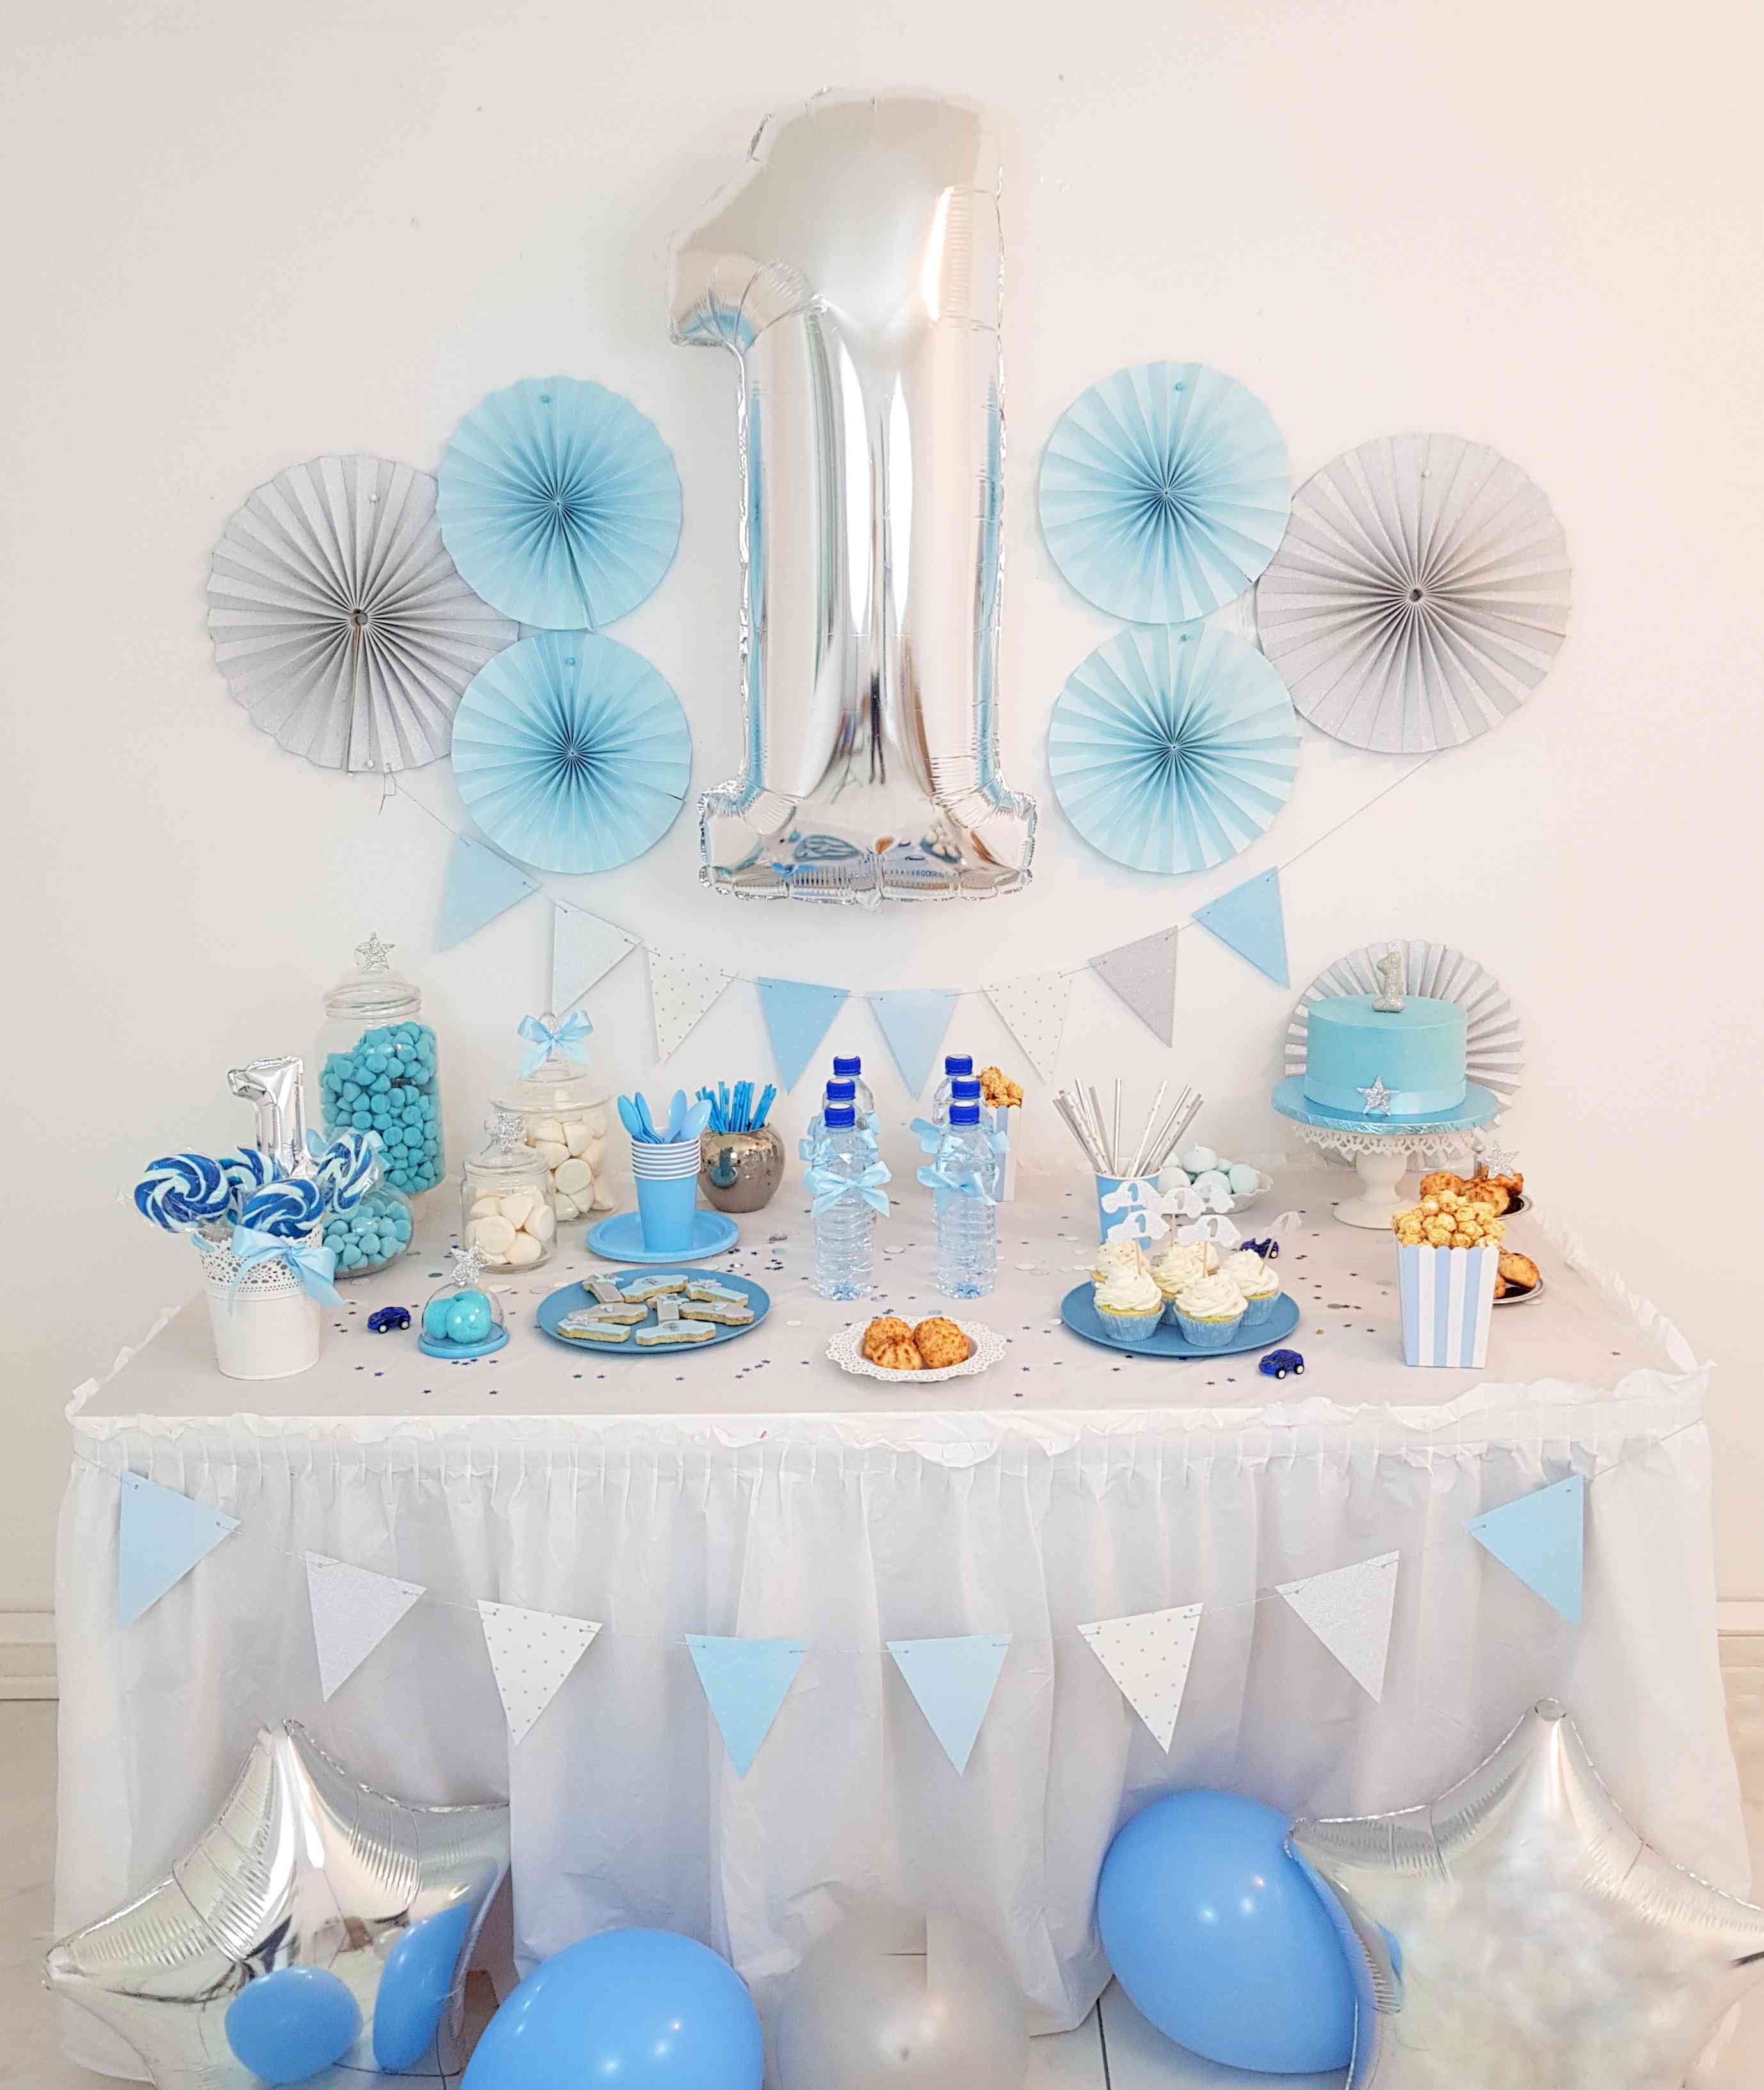 decoration premier anniversaire garcon bleu pastel et argent